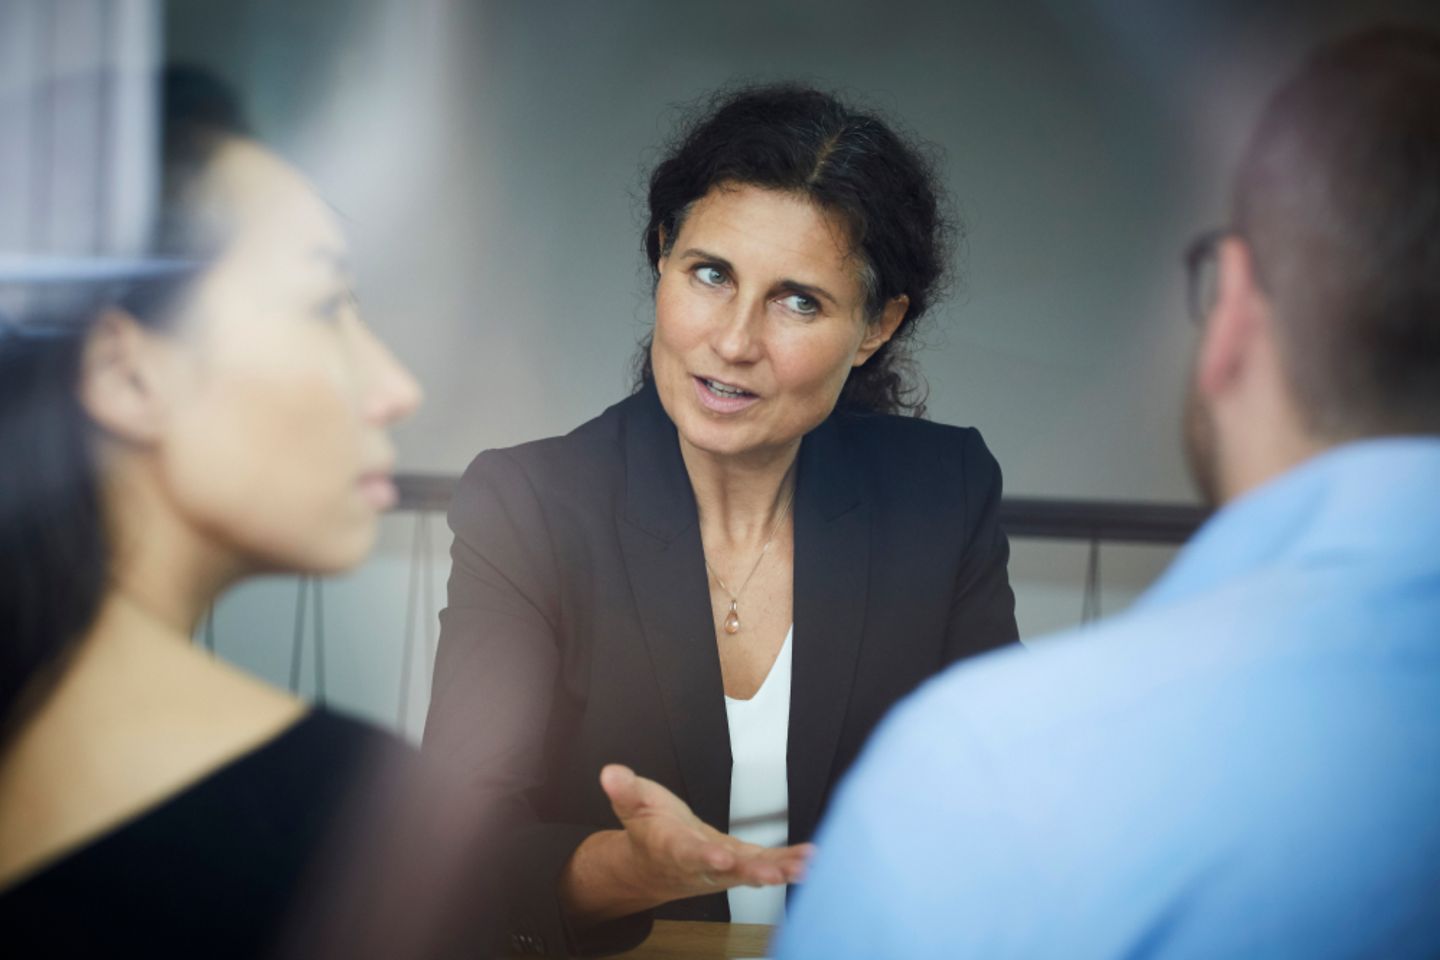 Une femme d’affaires discute avec un homme et une femme au cours d’une réunion dans un bureau.